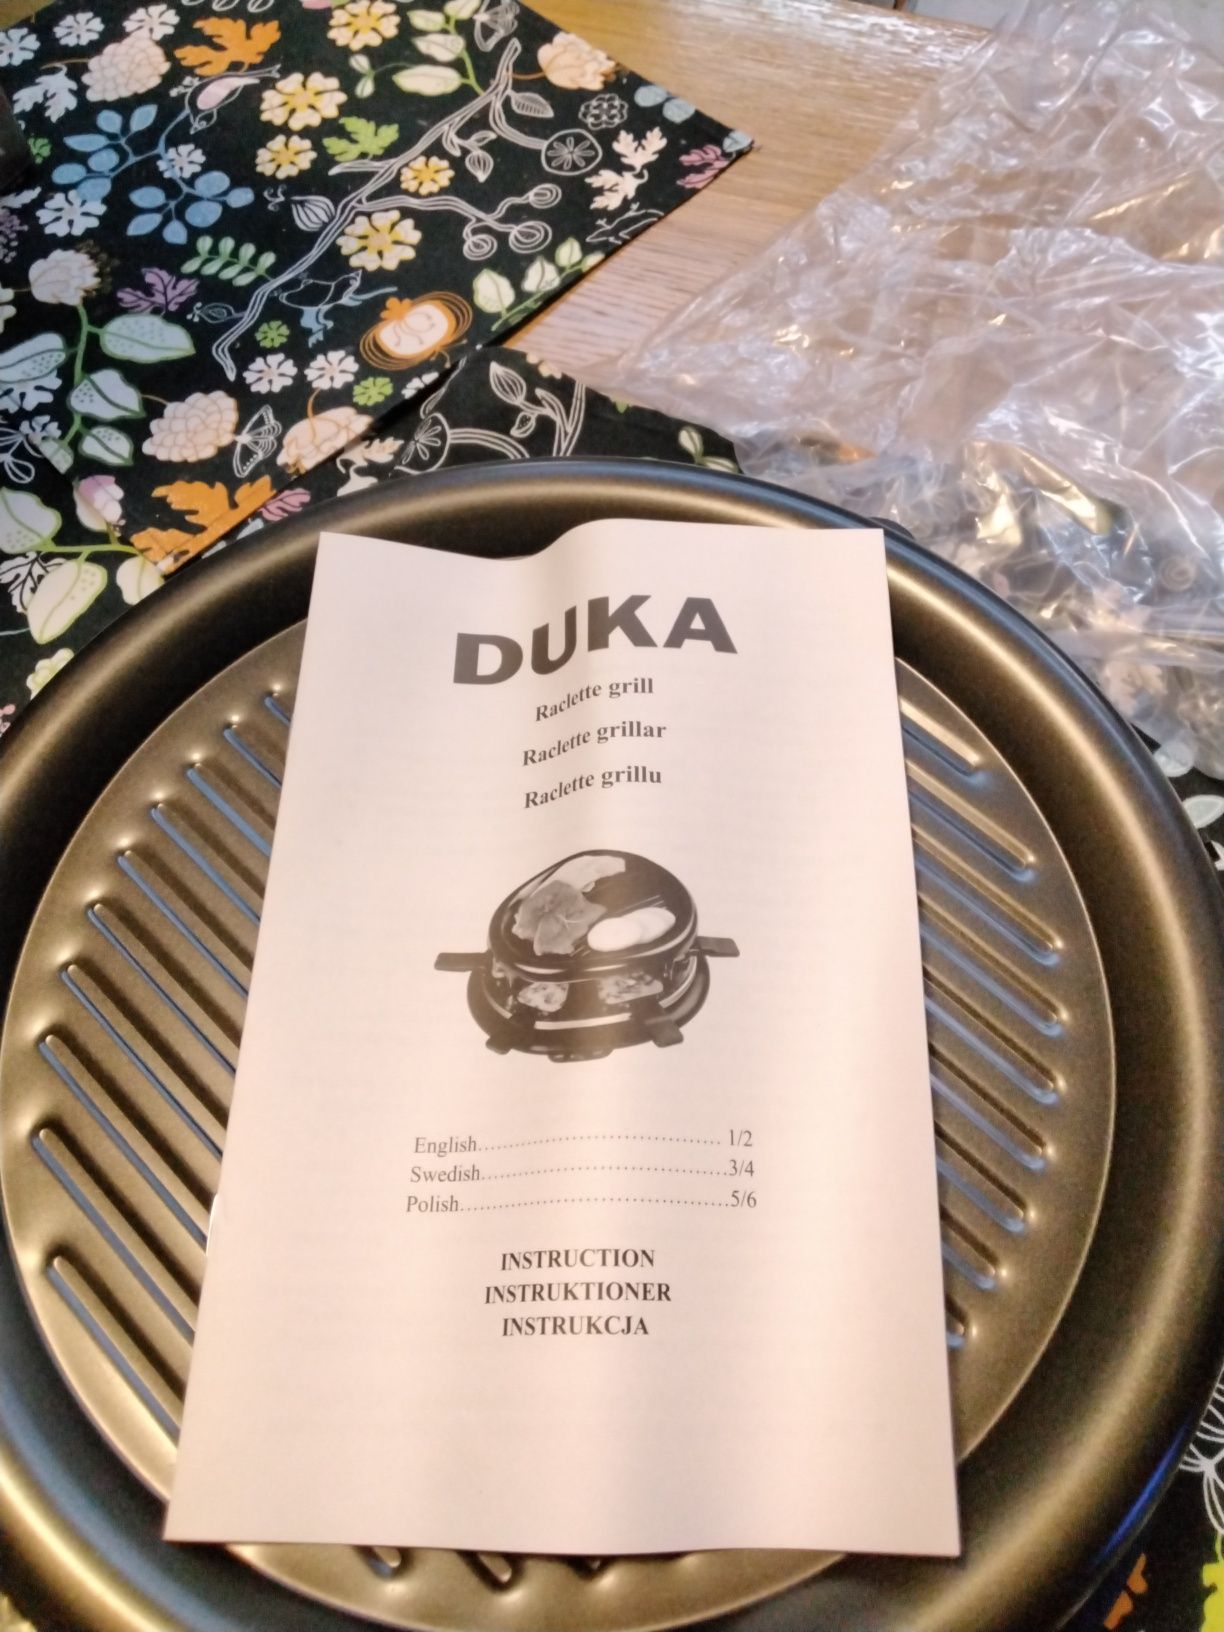 Sprzedam grill do raclette Duka moc 900W